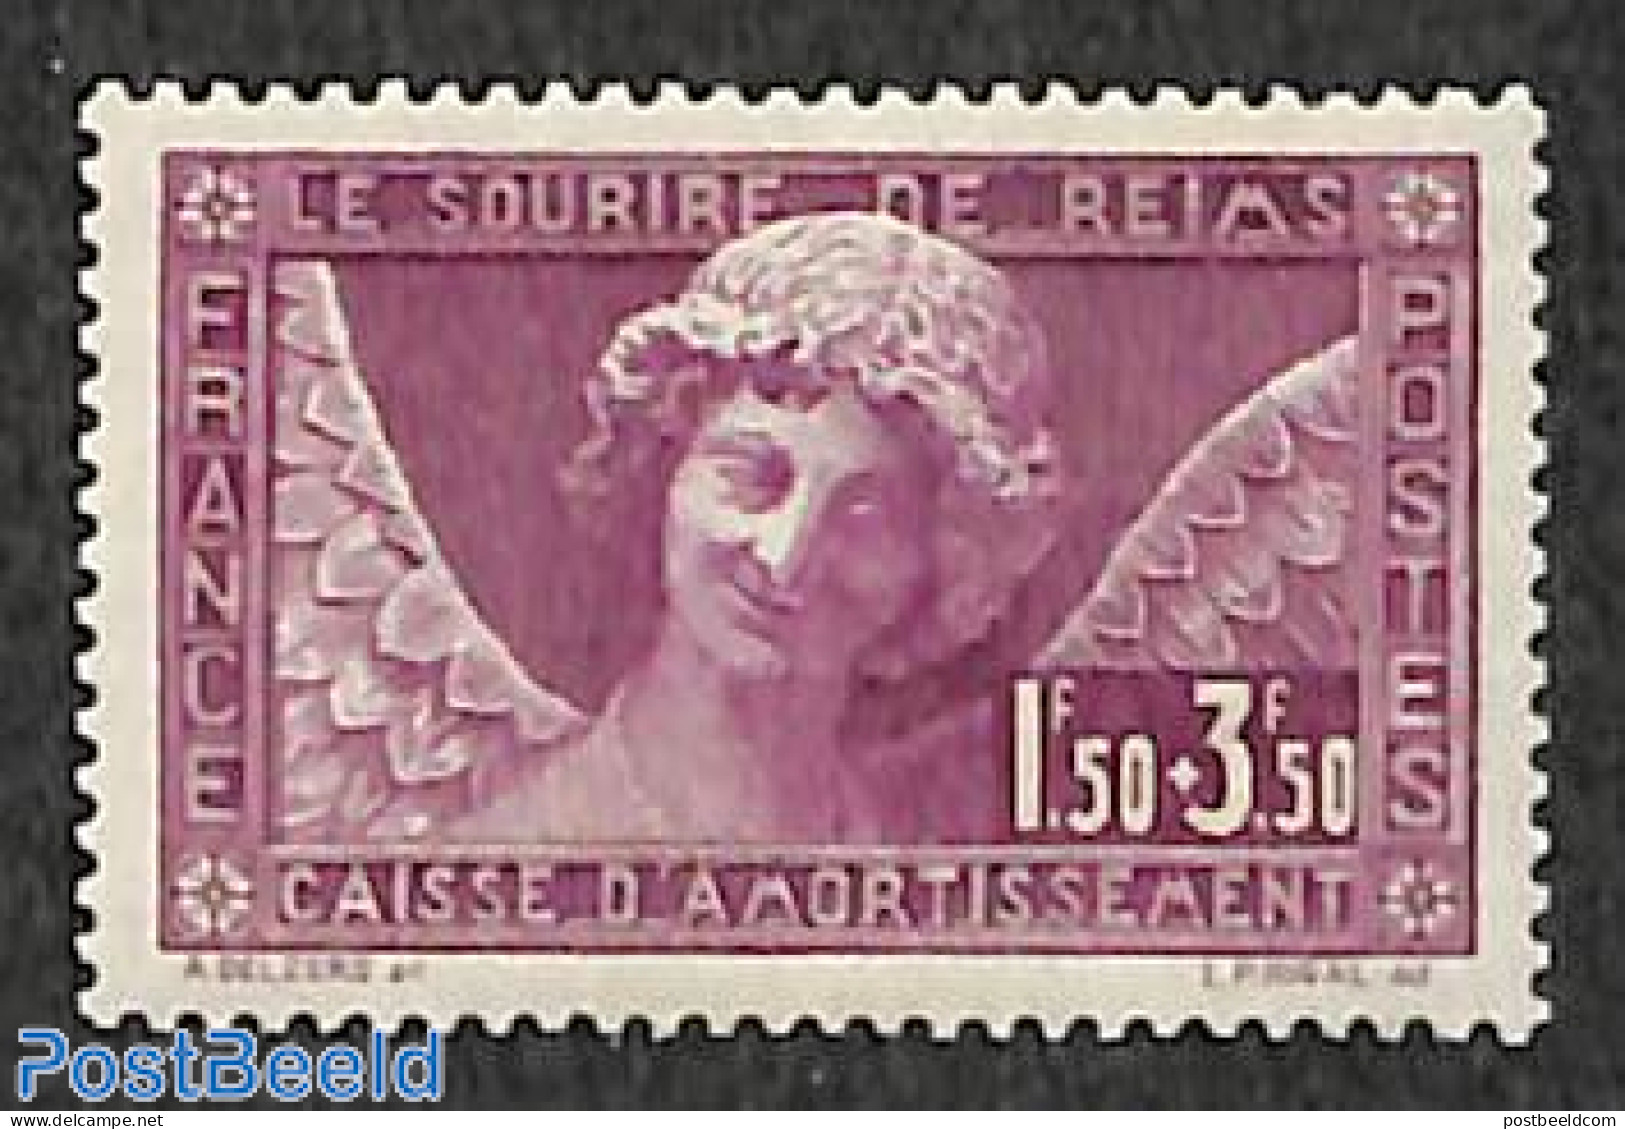 France 1930 National Cash 1v, Mint NH, Religion - Angels - Art - Sculpture - Nuevos